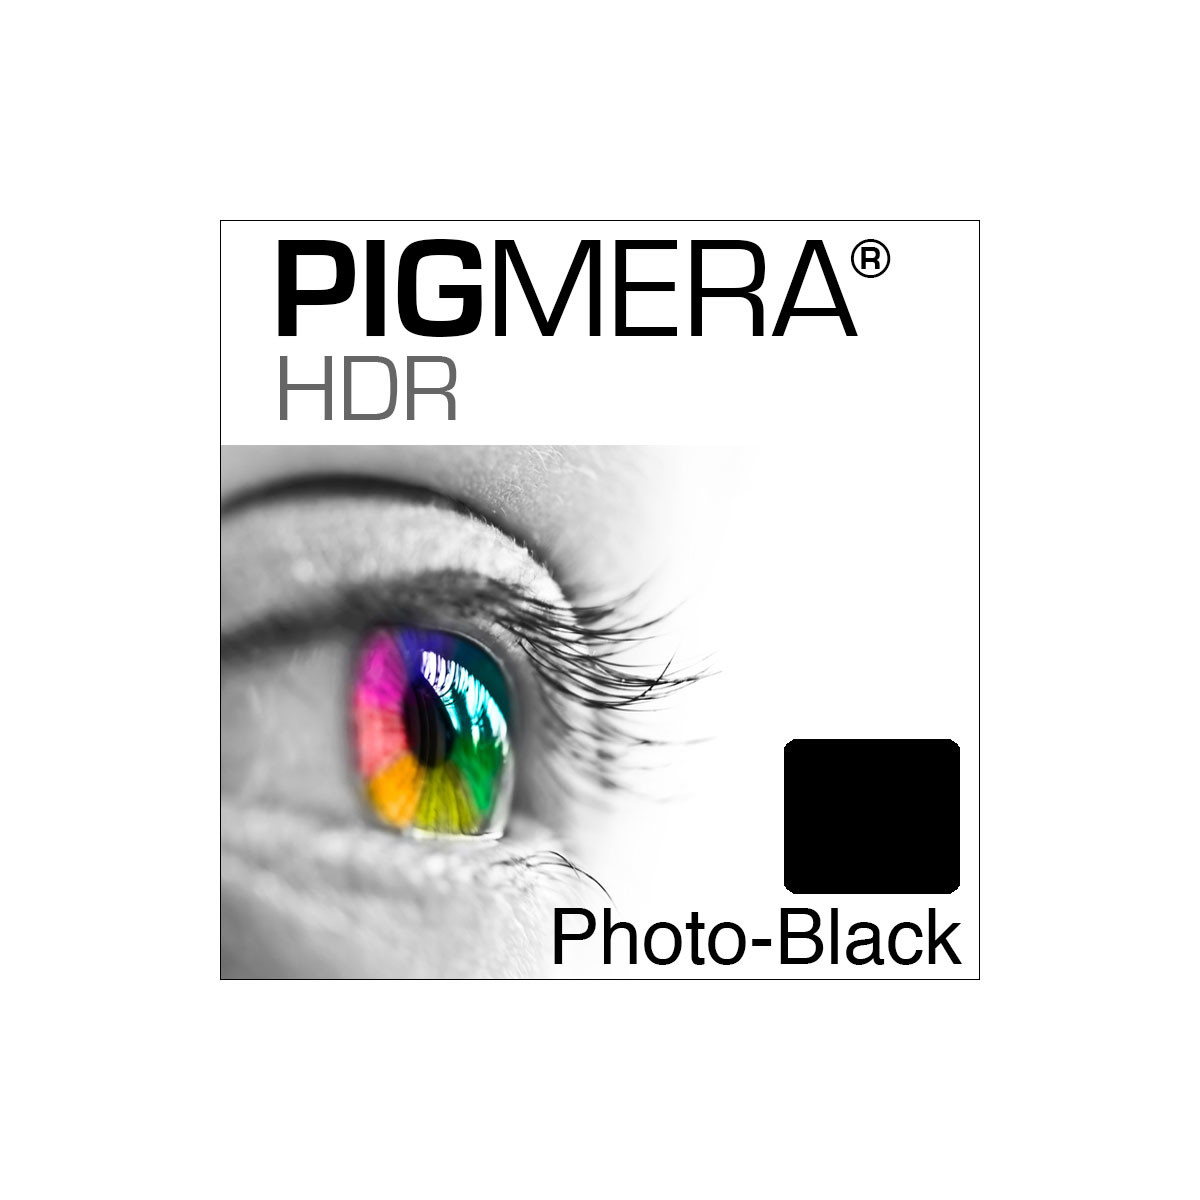 farbenwerk Pigmera HDR Flasche Photo-Black